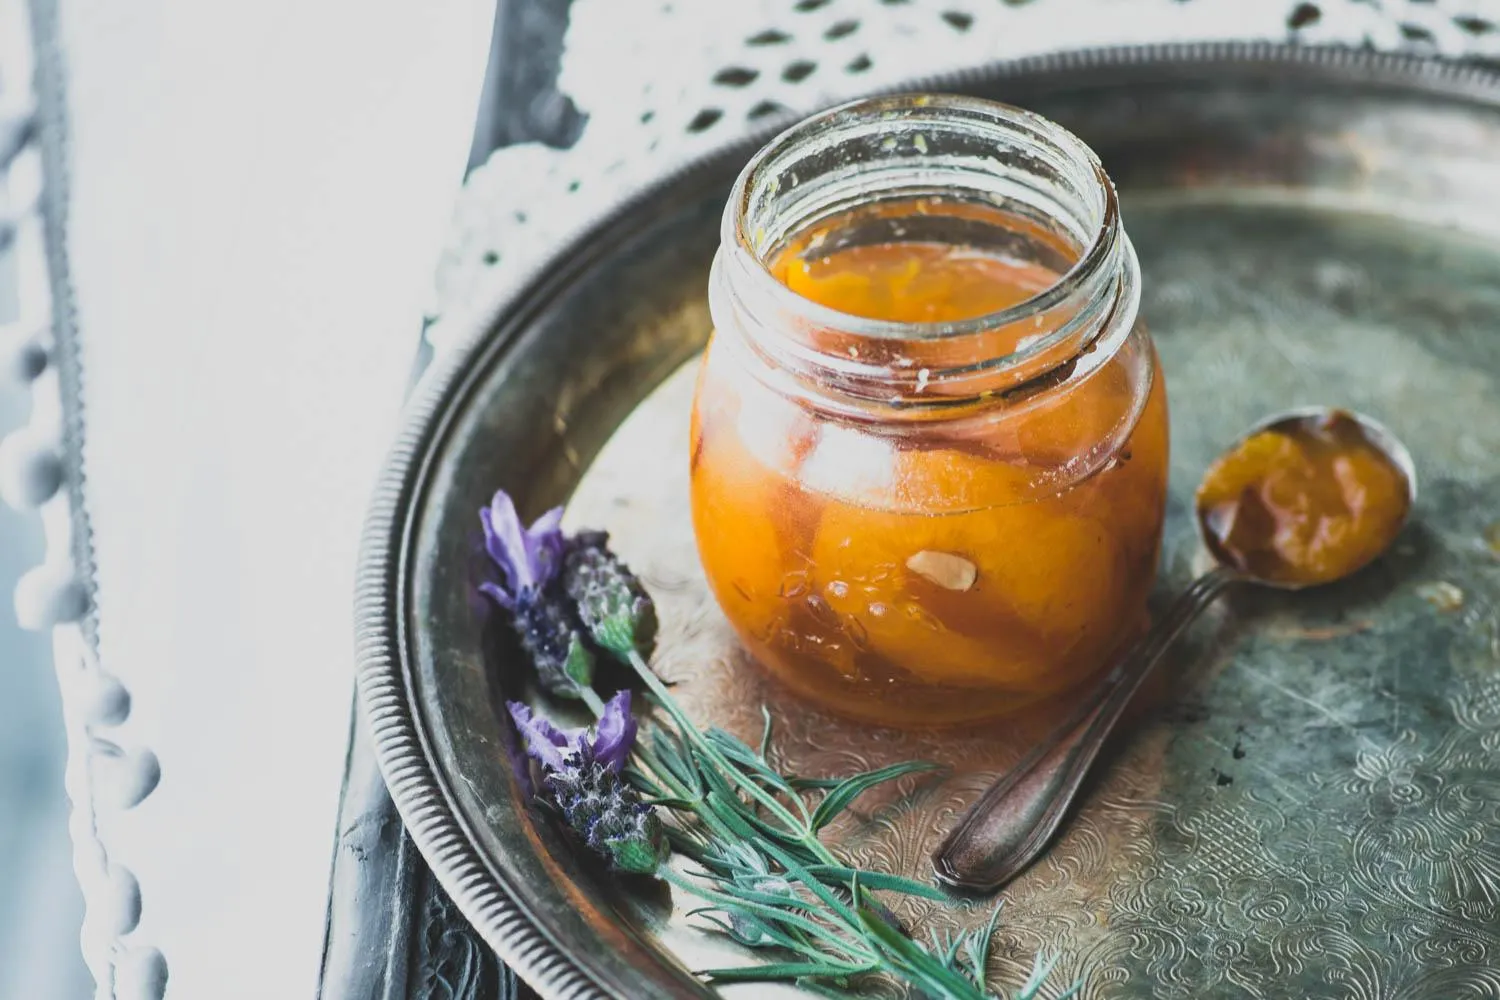 Варення з абрикосів: рецепти приготування – без кісточок, традиційне і п'ятихвилинка 